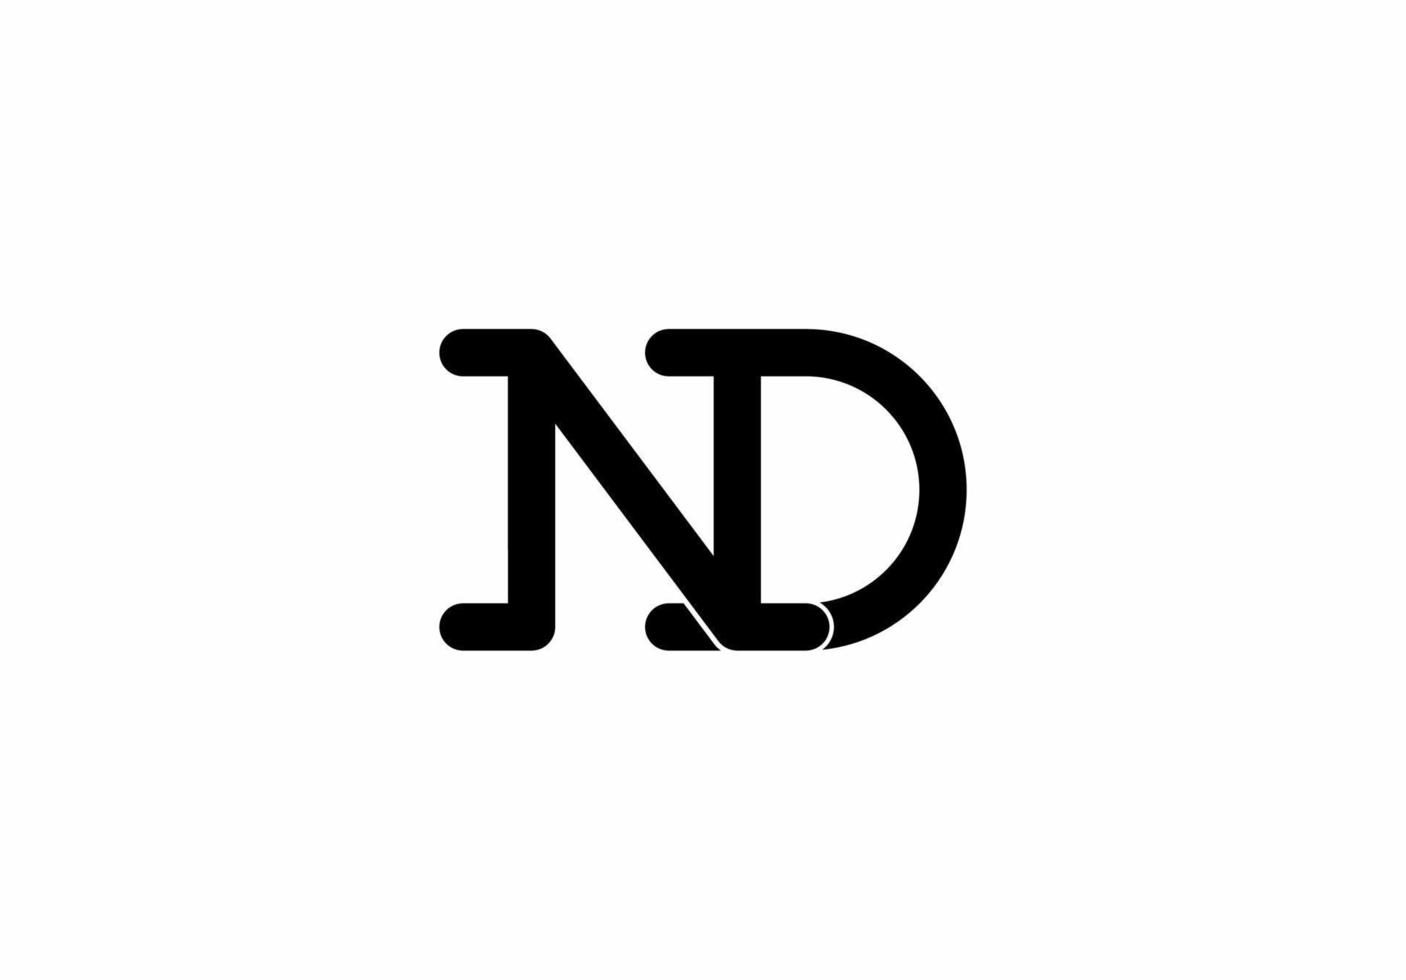 nd dan n d monogram logo isolated on white background vector